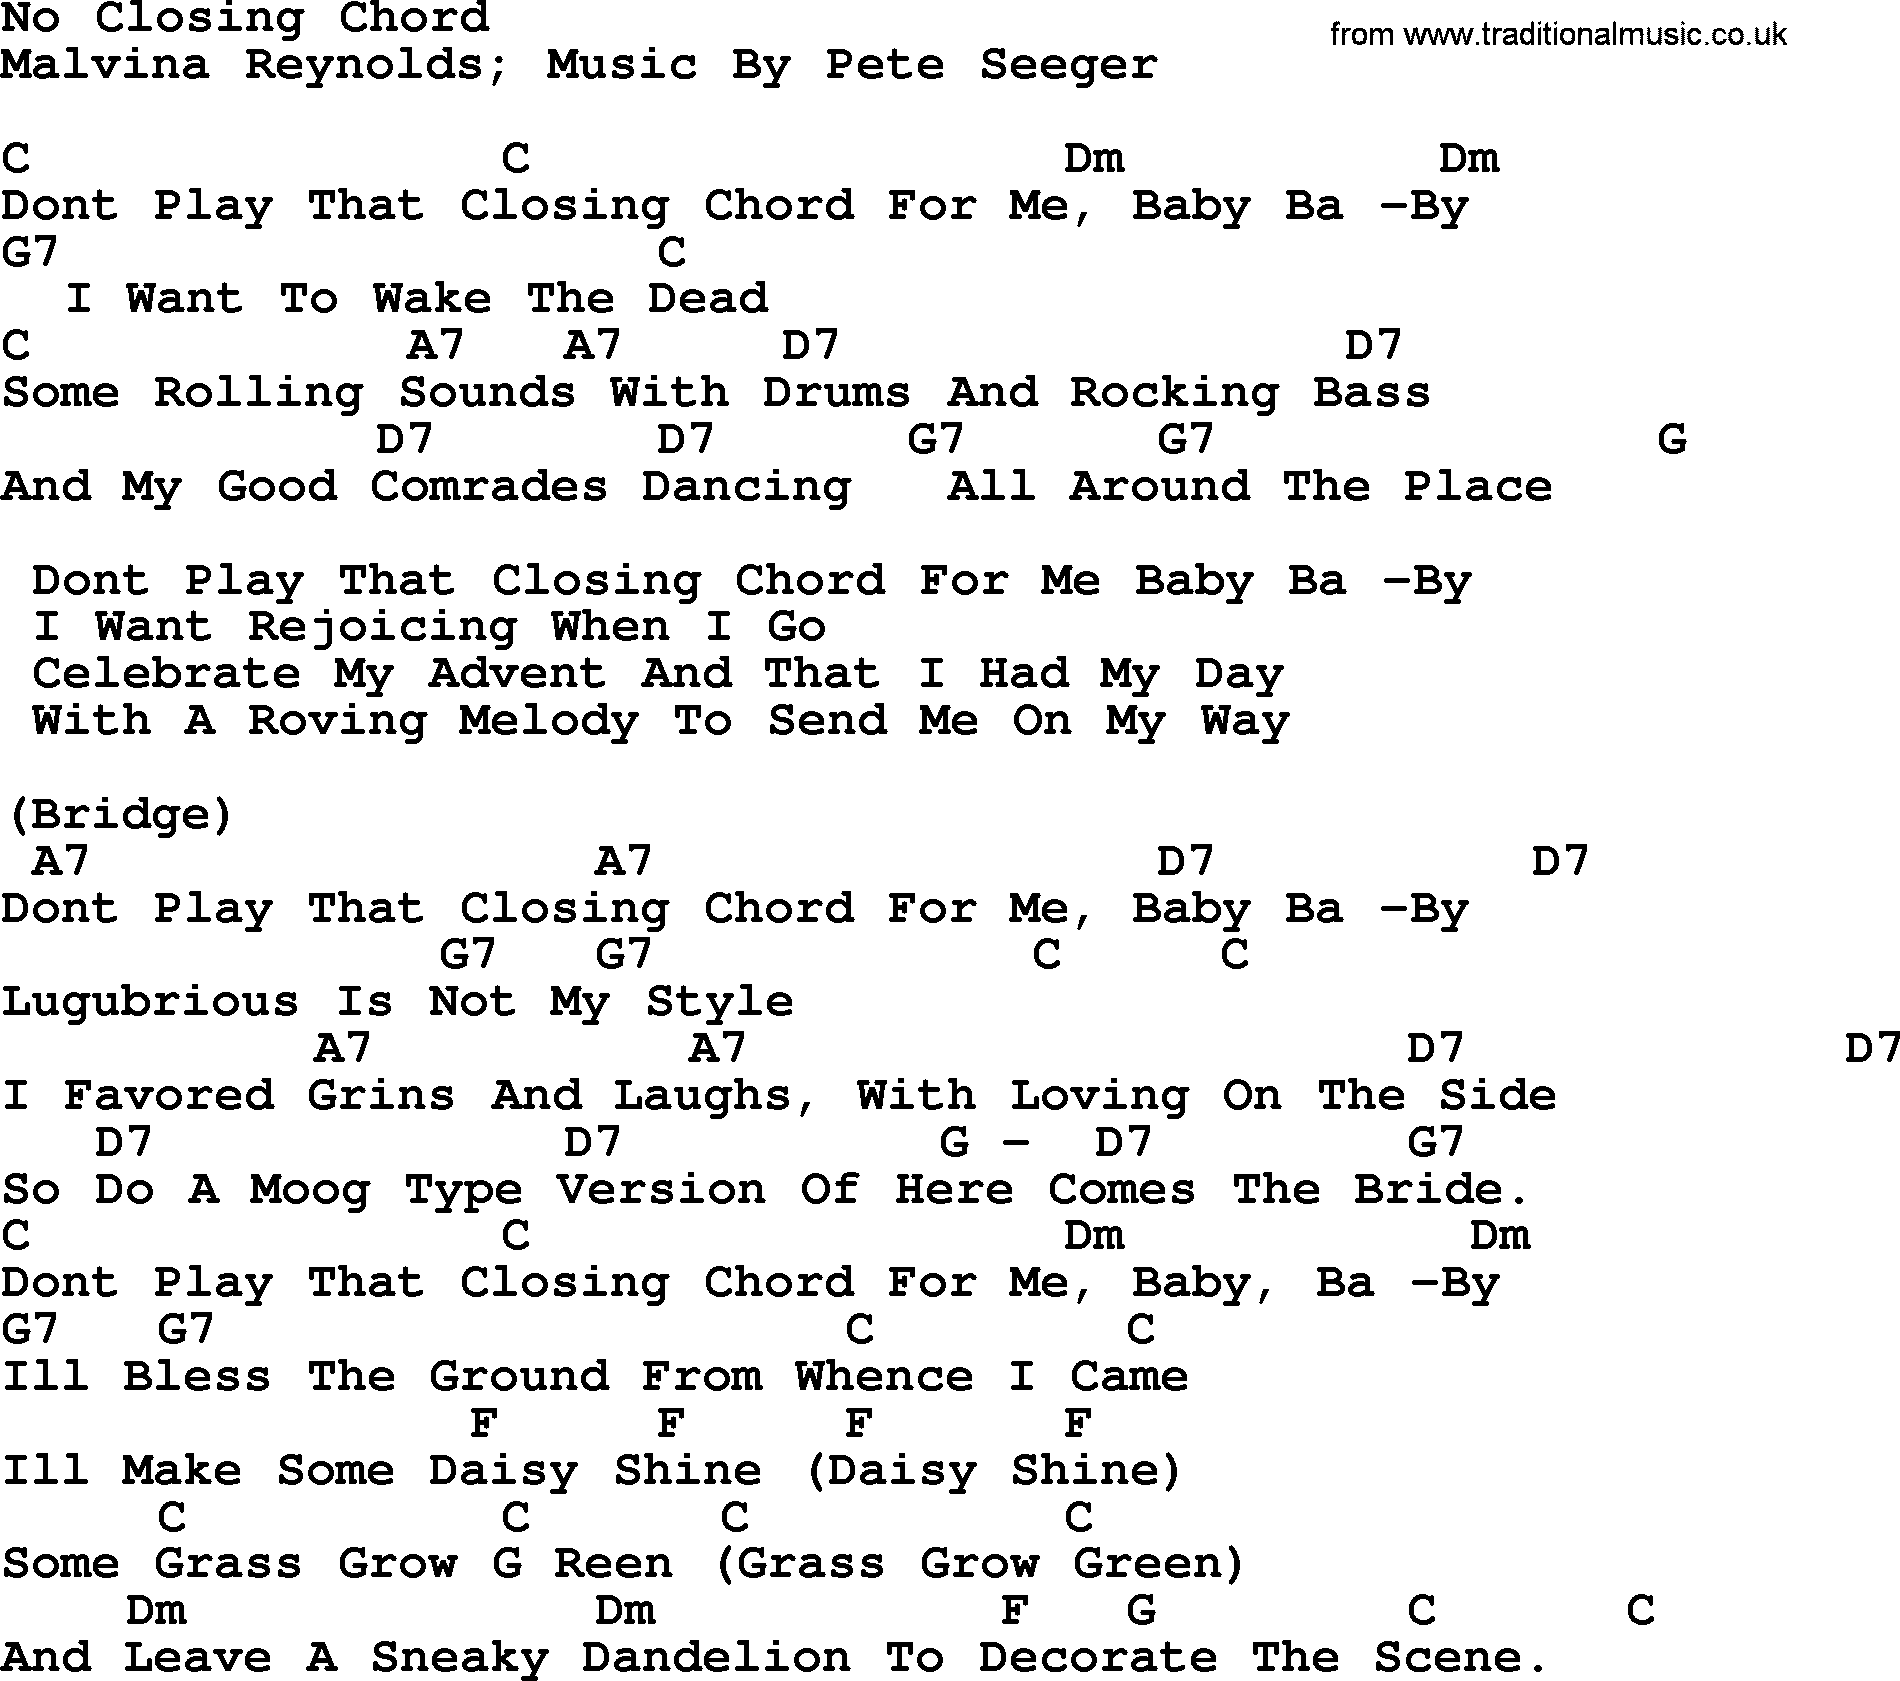 Pete Seeger song No Closing Chord, lyrics and chords